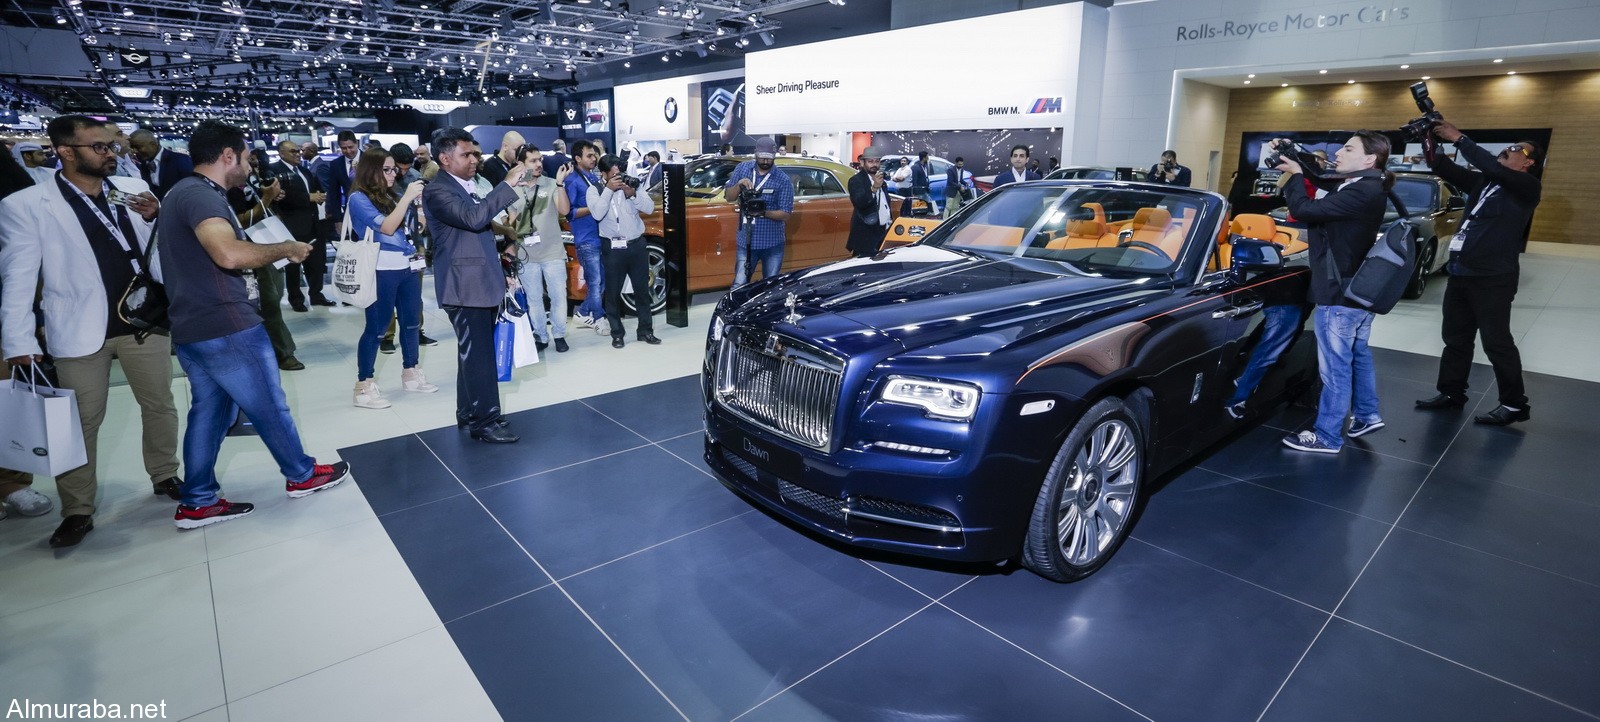 2015 Rolls-Royce Dawn Dubai 2